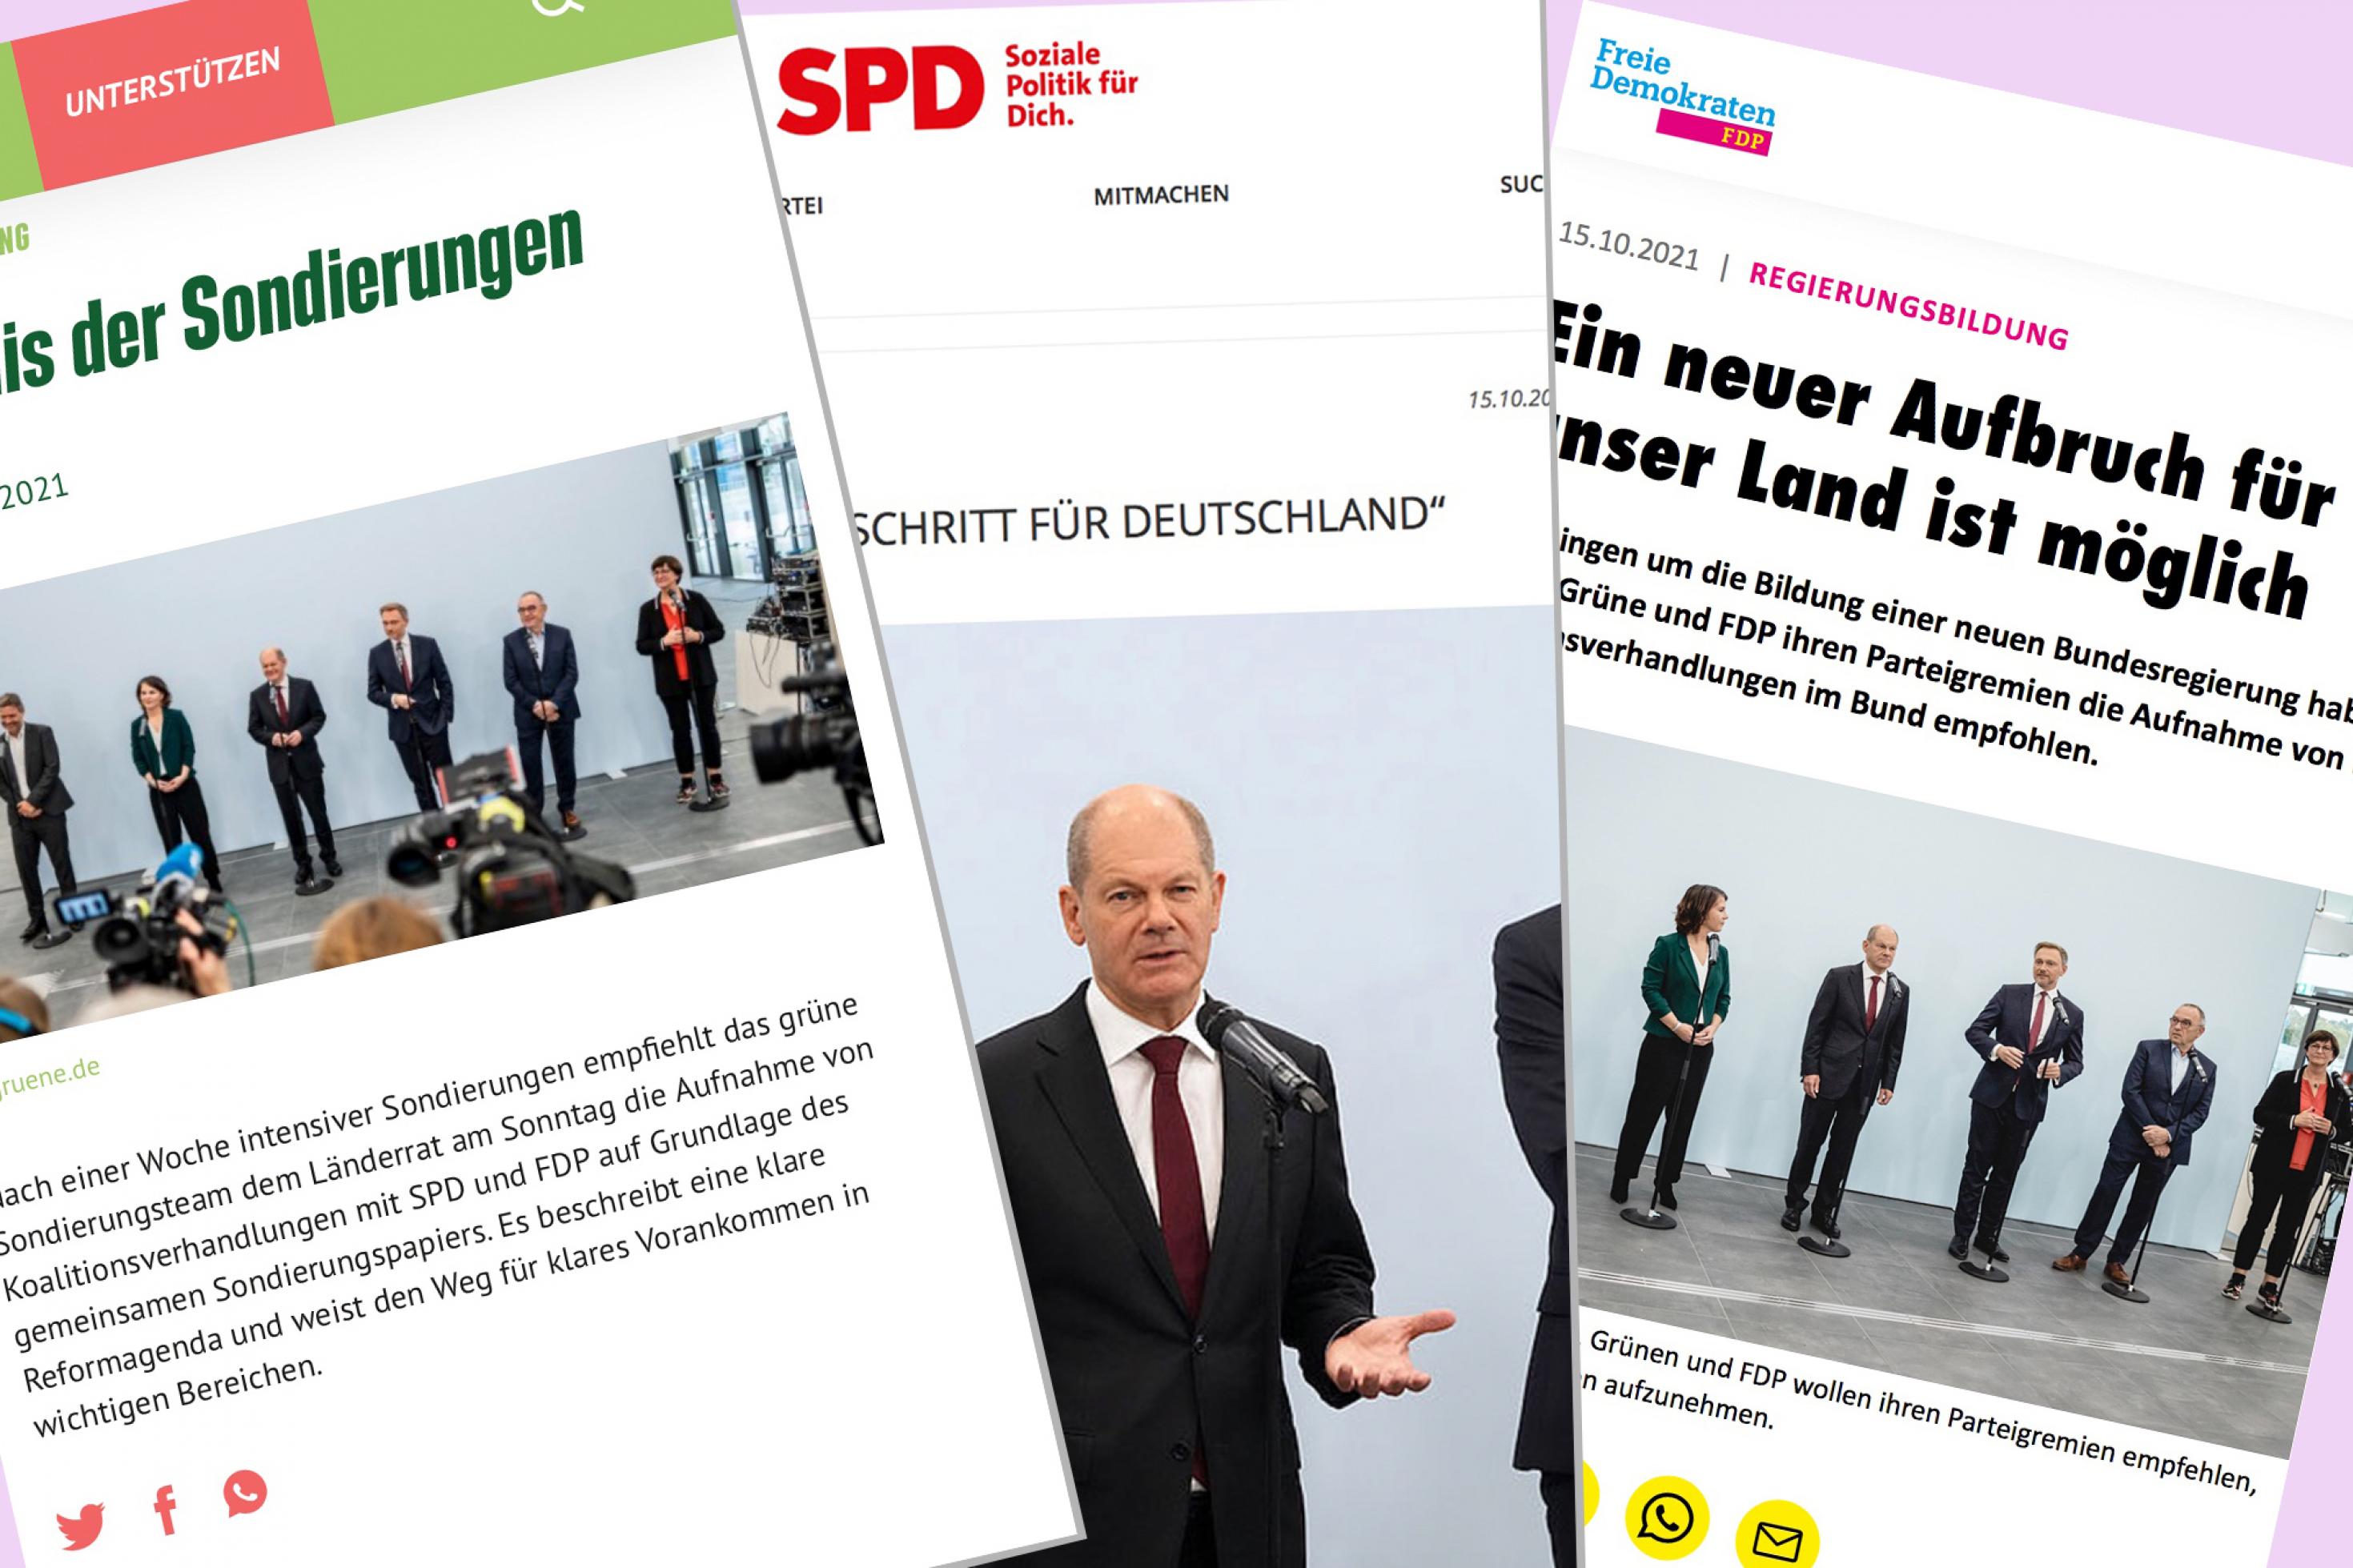 Eine Collage aus Screenshot der Pressemeldungen, mit denen den Parteien am Freitag das Ergebnis vermeldeten und den Text des 12-seitigen abgestimmten Entwurfs zugänglich machten. Links die Grünen, in der Mitte die SPD, rechts die FDP. Zu sehen sind dort jeweils Fotos von der Pressekonferenz.